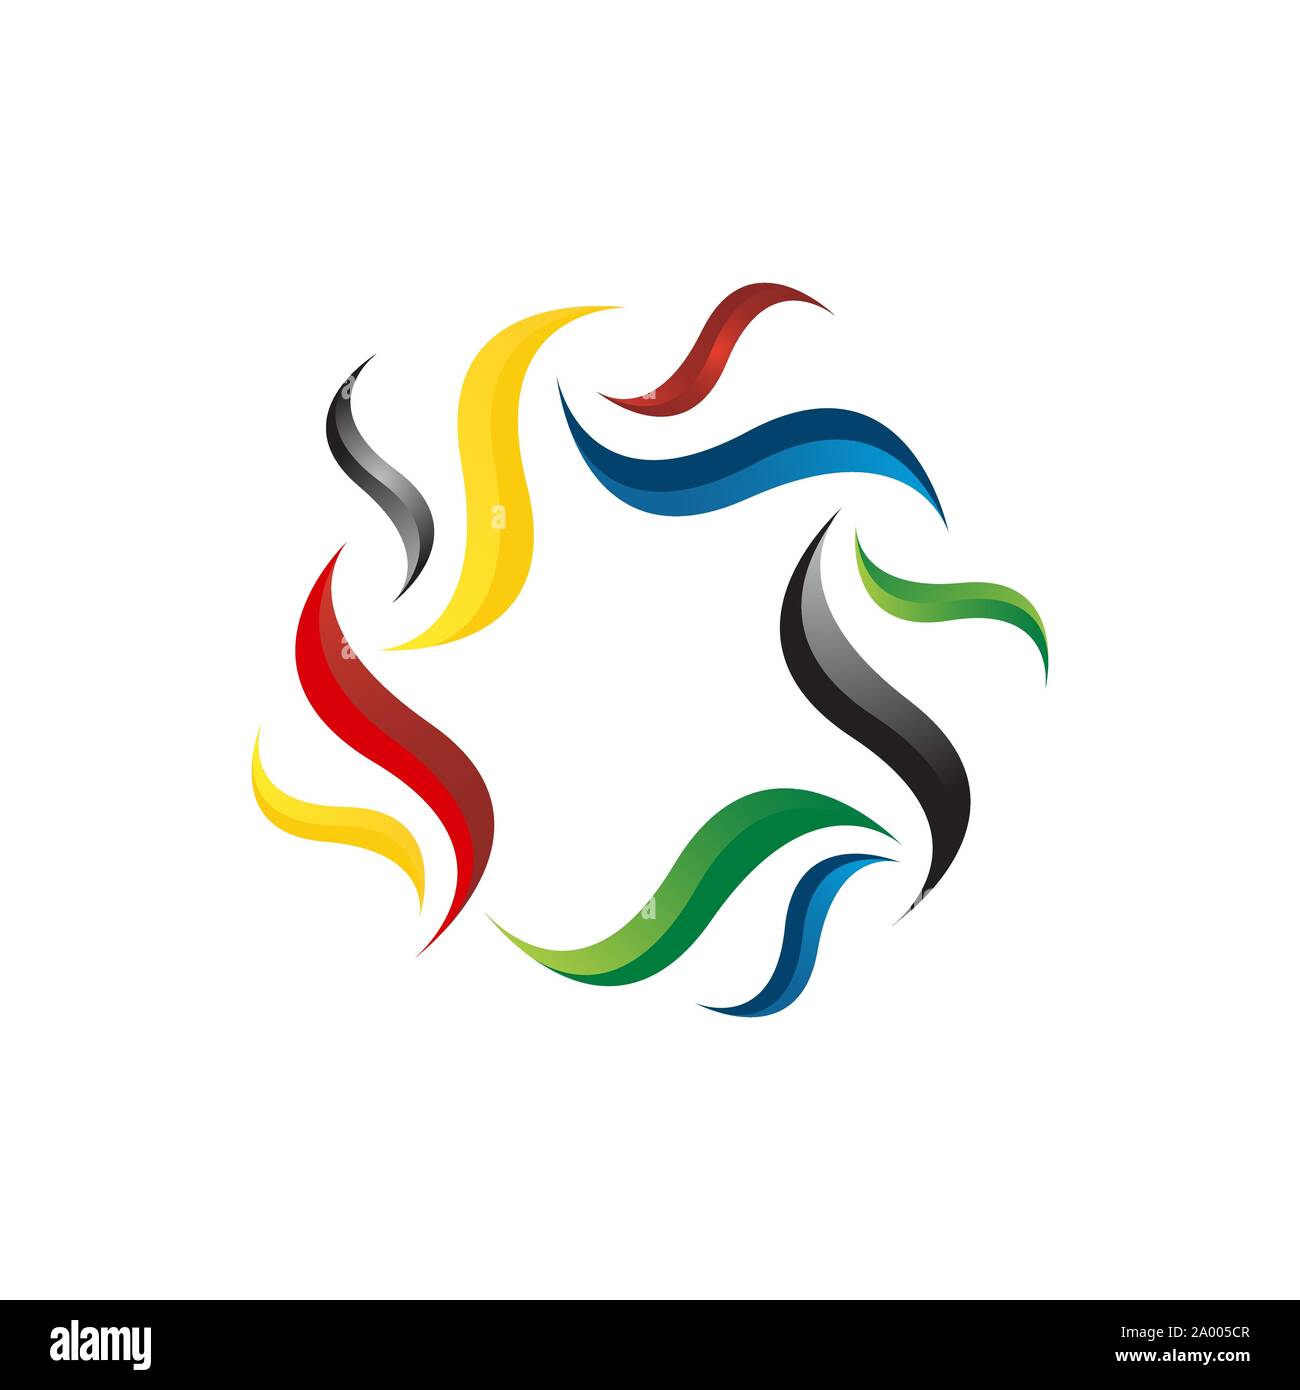 Cercle coloré groupe de personnes l'unité de conception de logo de l'unité symbole vecteur Illustration Illustration de Vecteur